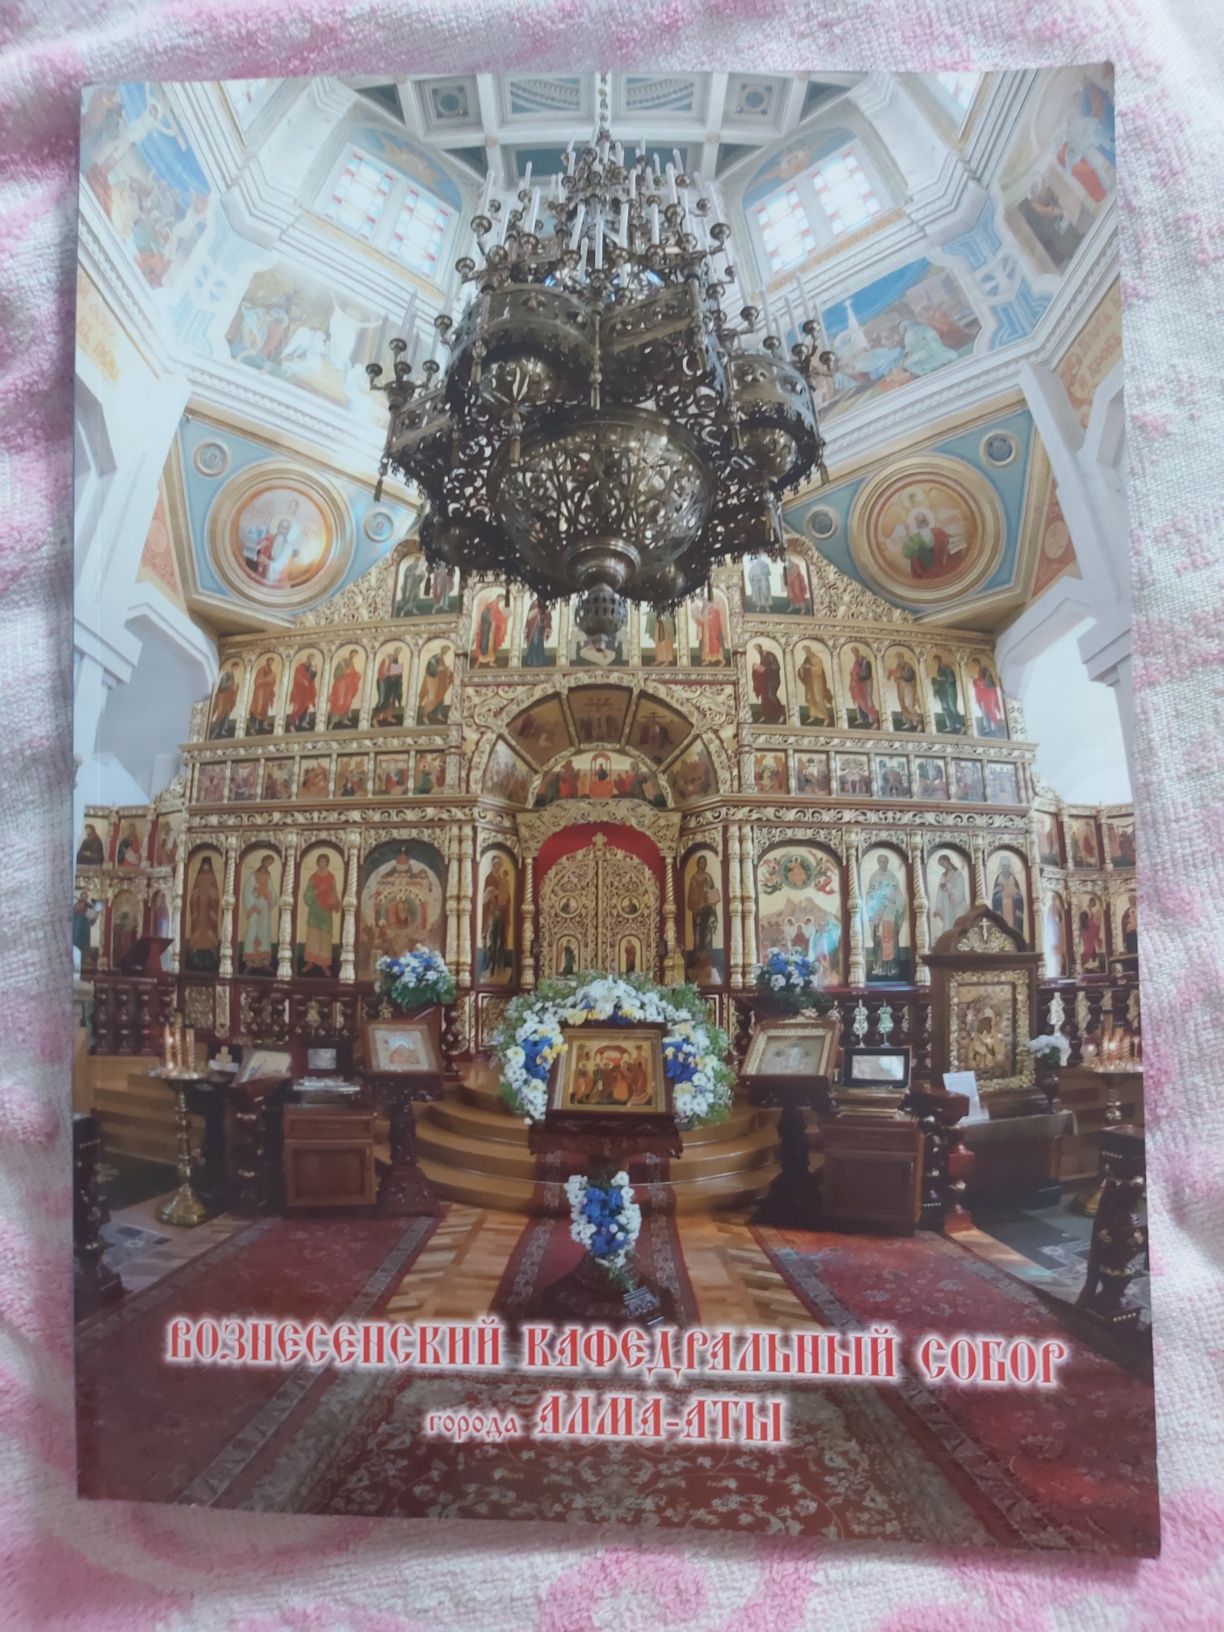 Вознесенский кафедральный собор города Алматы